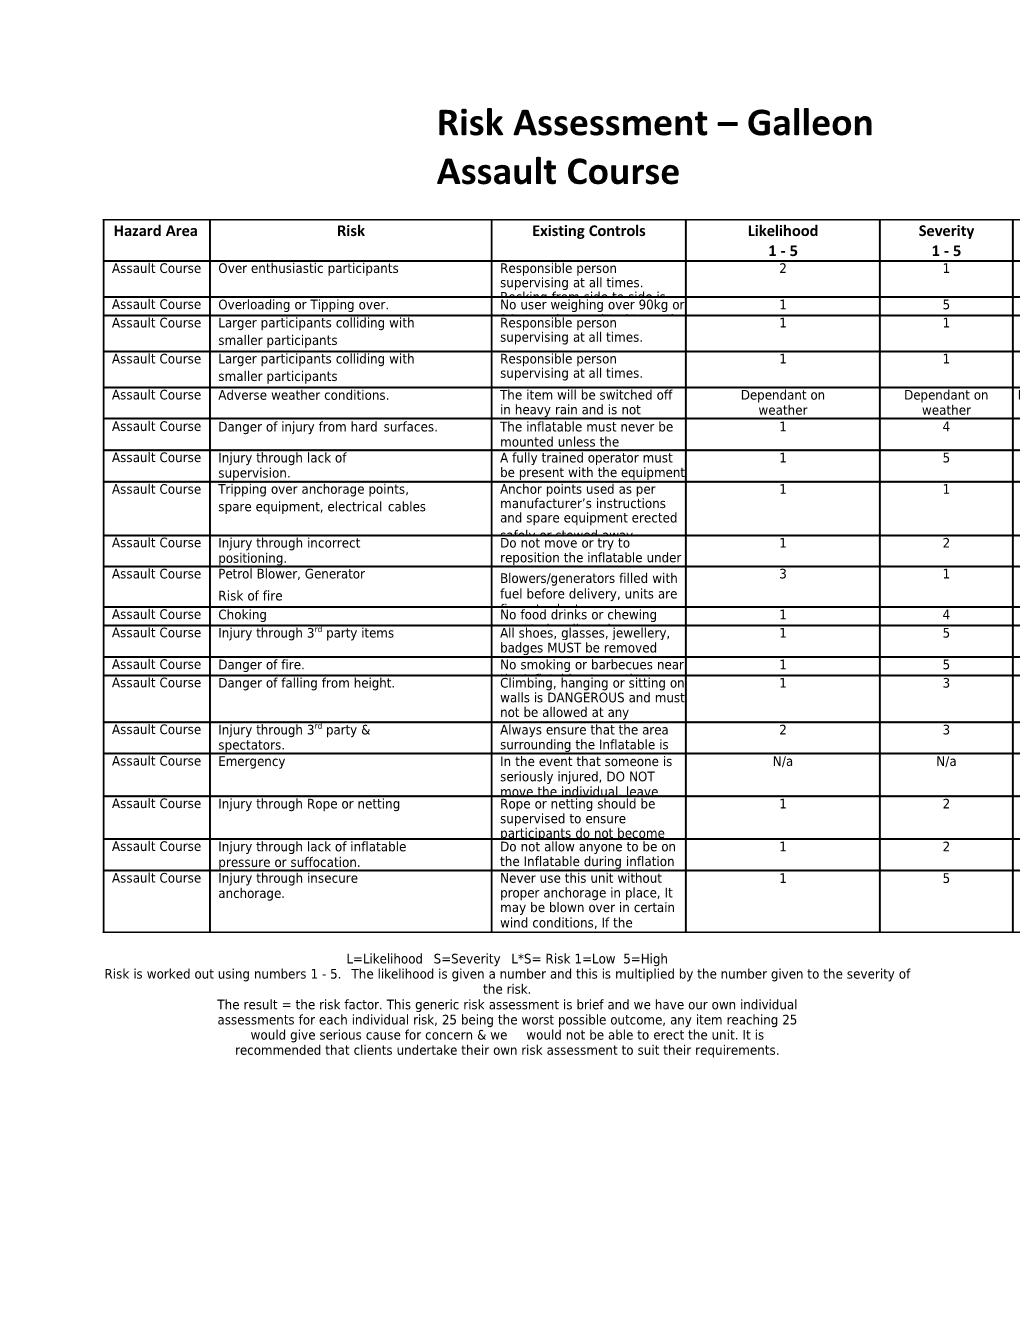 Assault Course - Risk Assessment 2010